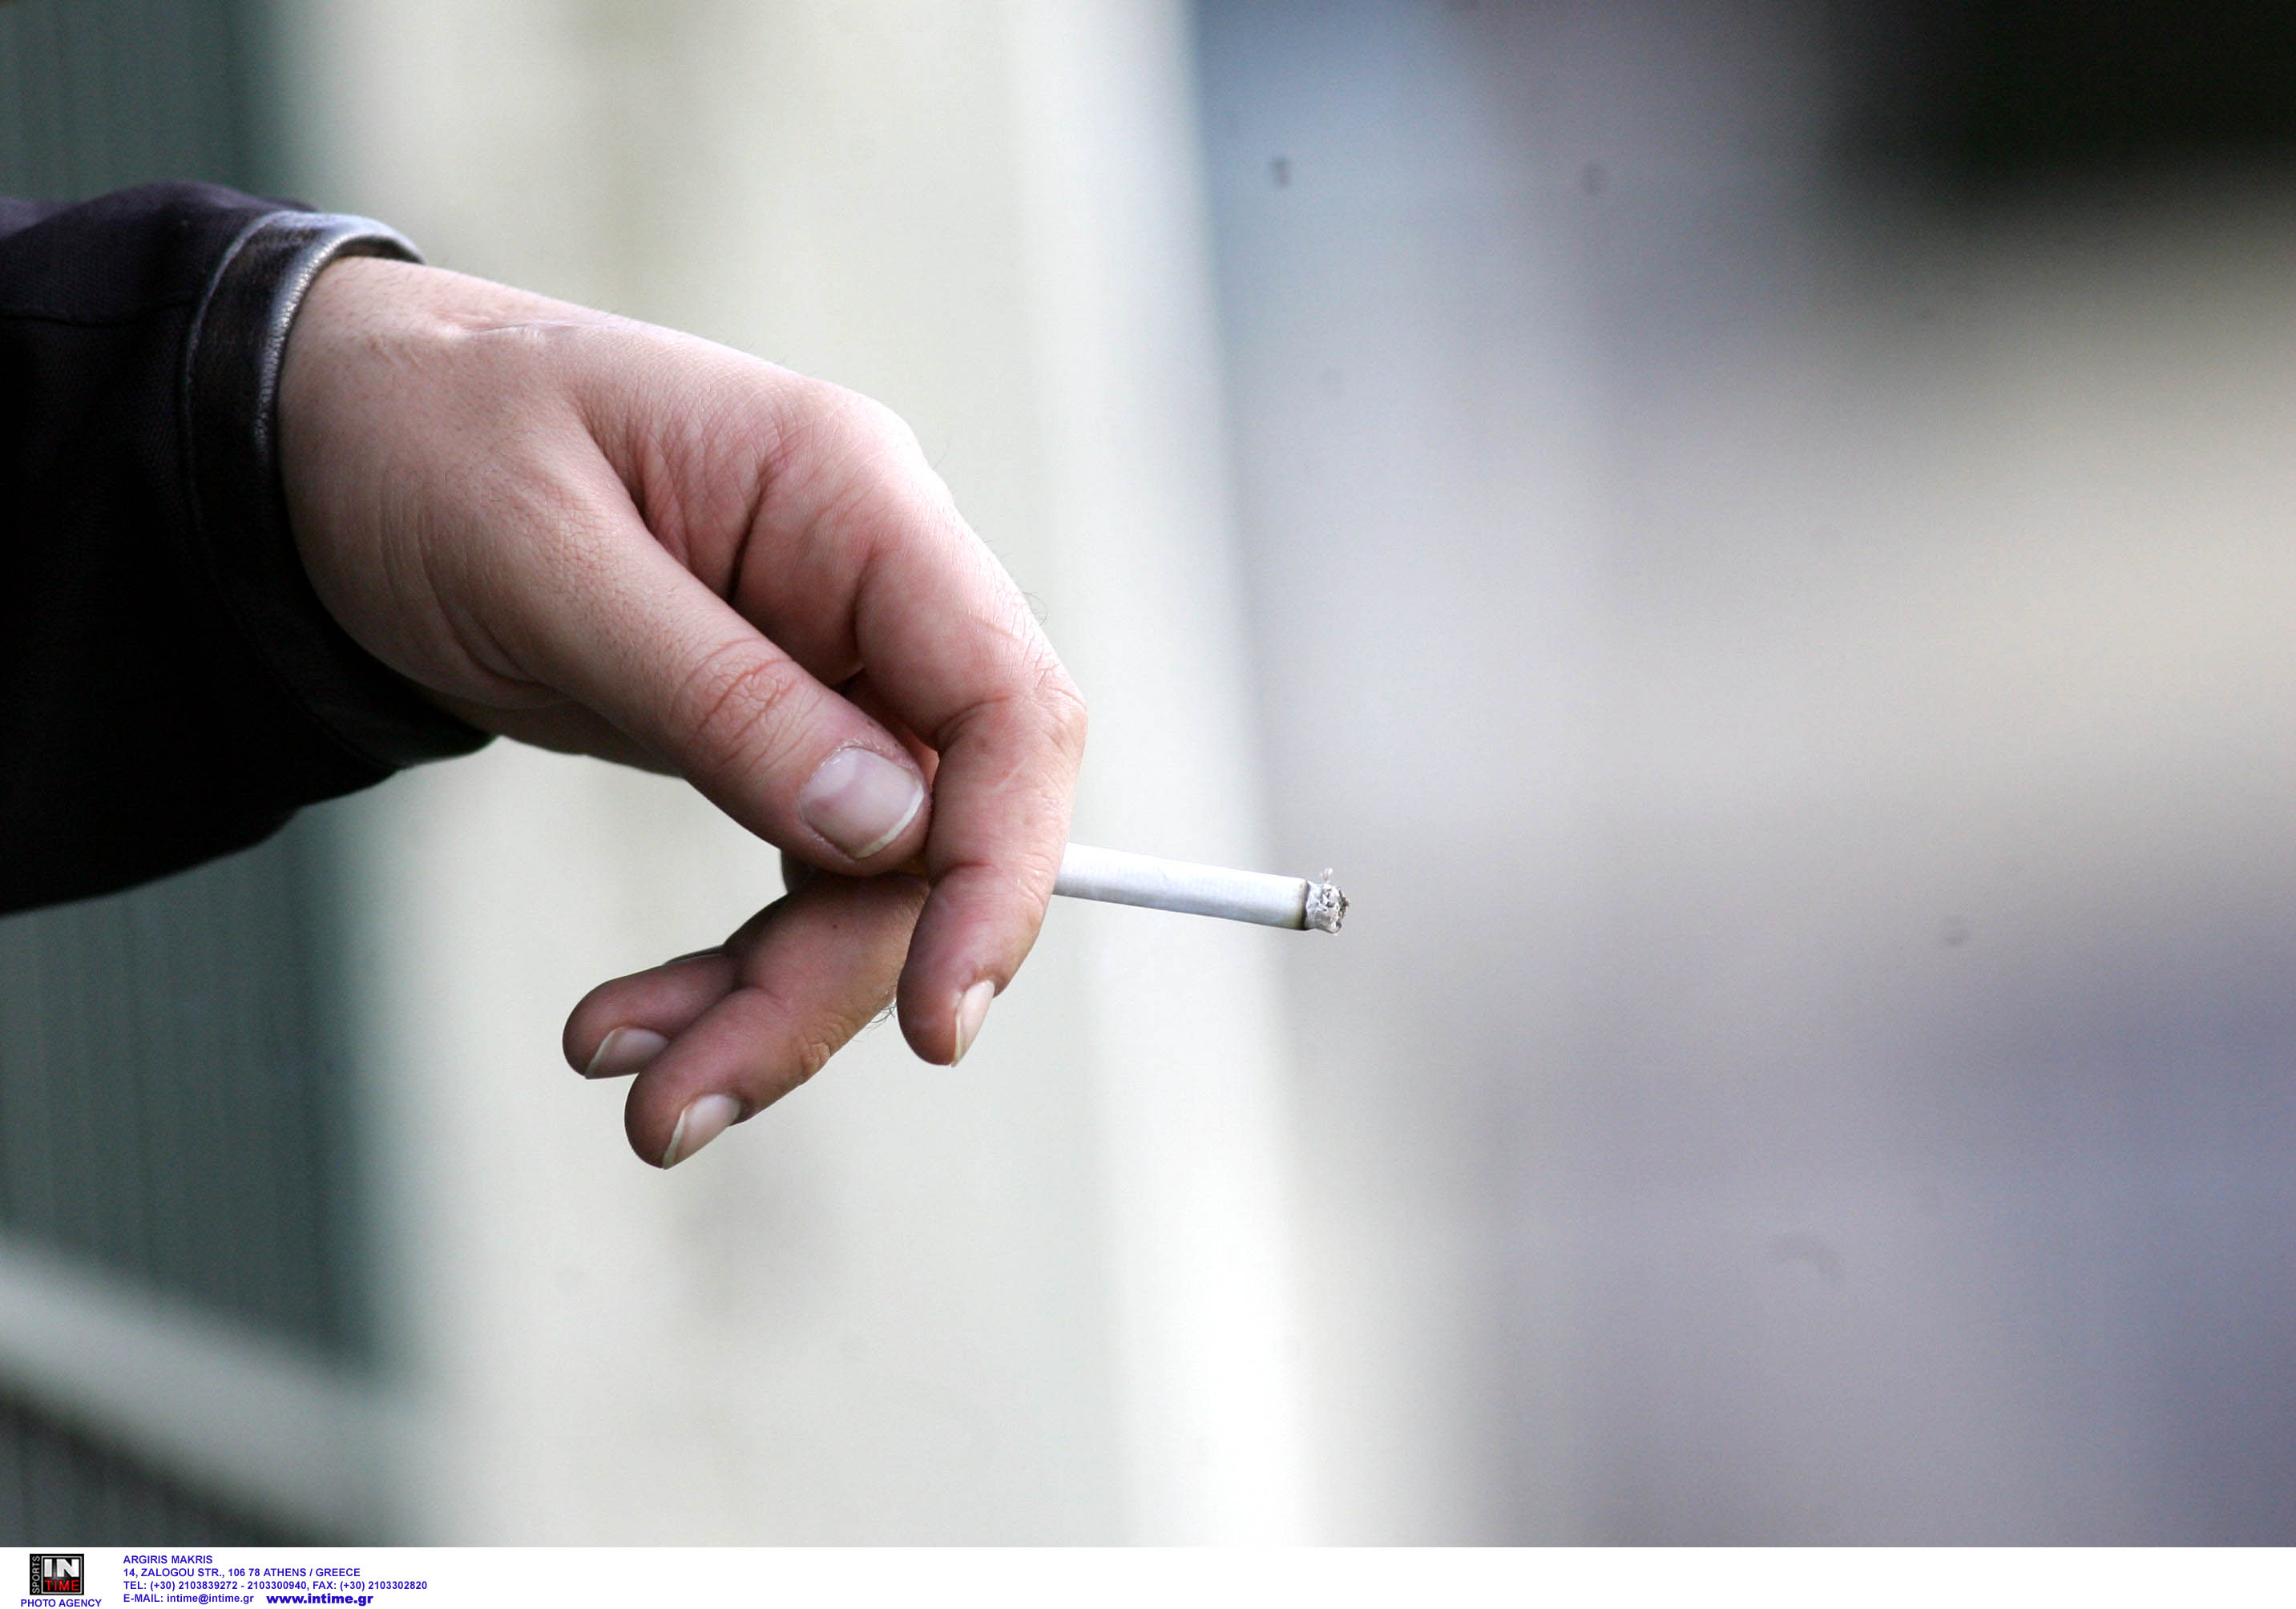 Τέλος αυτά τα τσιγάρα από σήμερα σε όλη την Ε.Ε! Απαγορεύεται η κυκλοφορία τους